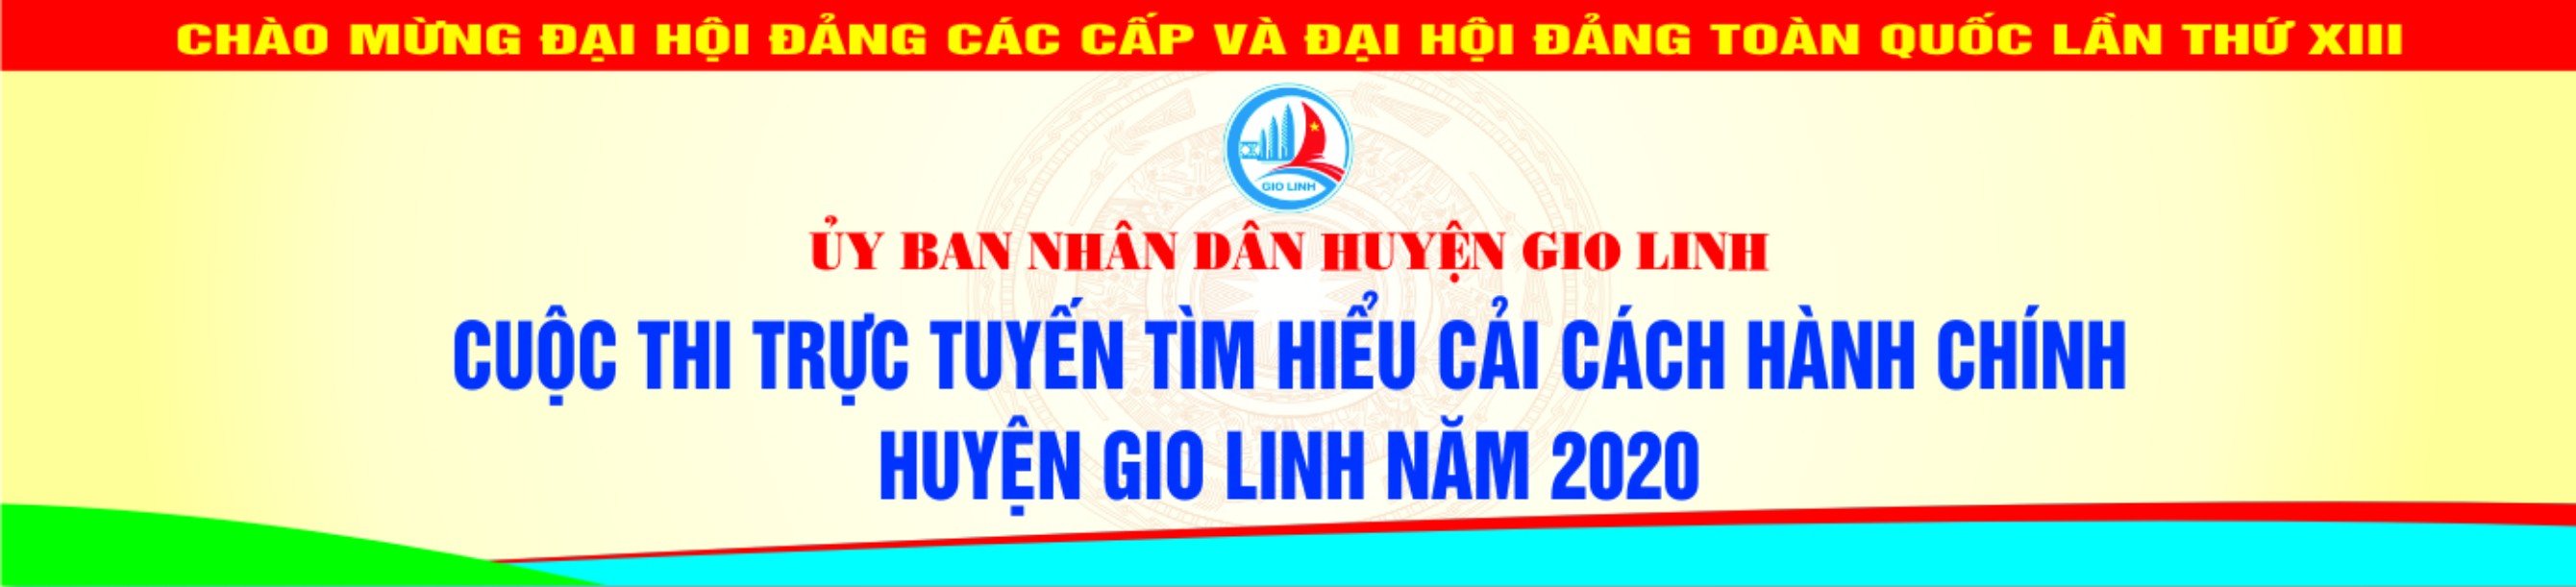 Cuộc thi trực tuyến tìm hiểu cải cách hành chính Huyện Gio Linh năm 2020